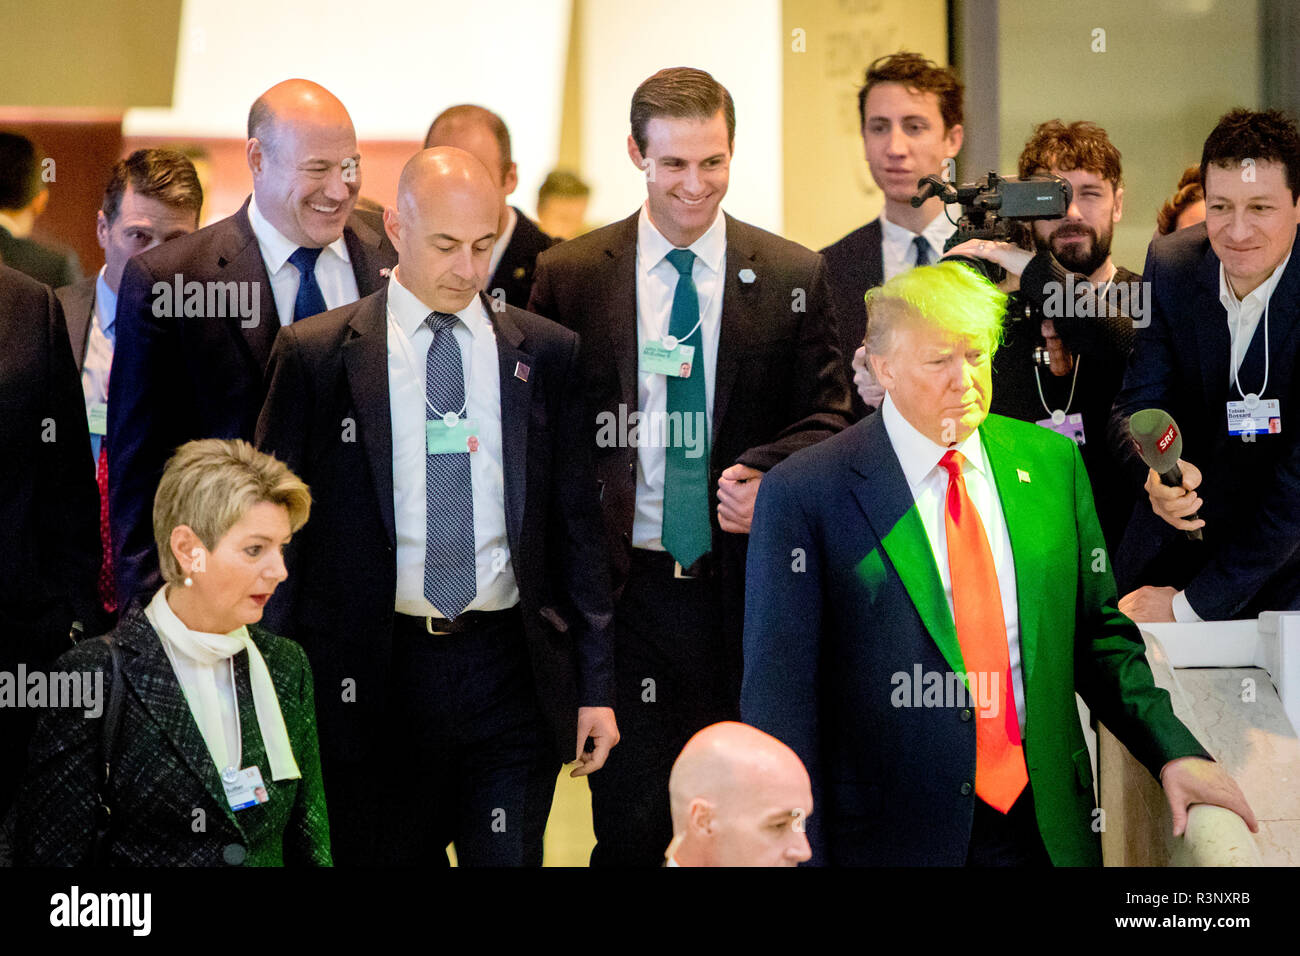 El ex asesor económico de Donald Trump, Gary Cohn (izquierda) y el ex asistente personal de la Casa Blanca, John McEntee (centro), siguen detrás del presidente estadounidense Donald Trump bajando las escaleras en el Foro Económico Mundial (FEM en Davos en enero de 2018, mientras ambos todavía tenían empleos en la administración Trump). Foto de stock